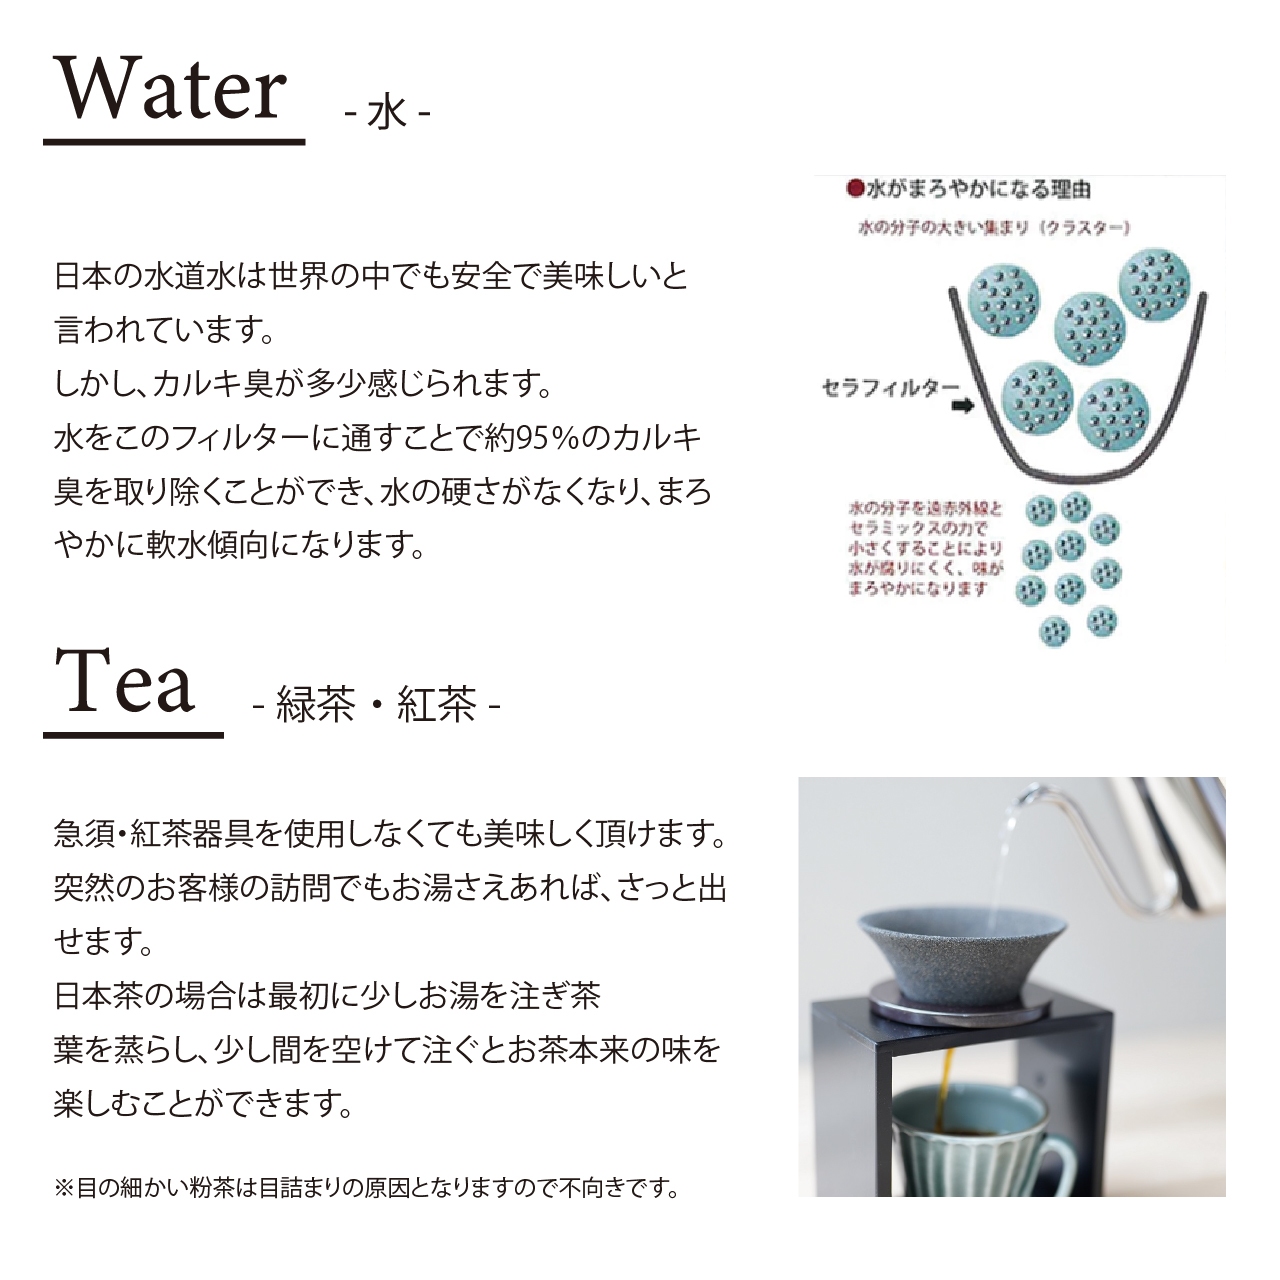 セラフィルター 使い方 水 緑茶 紅茶